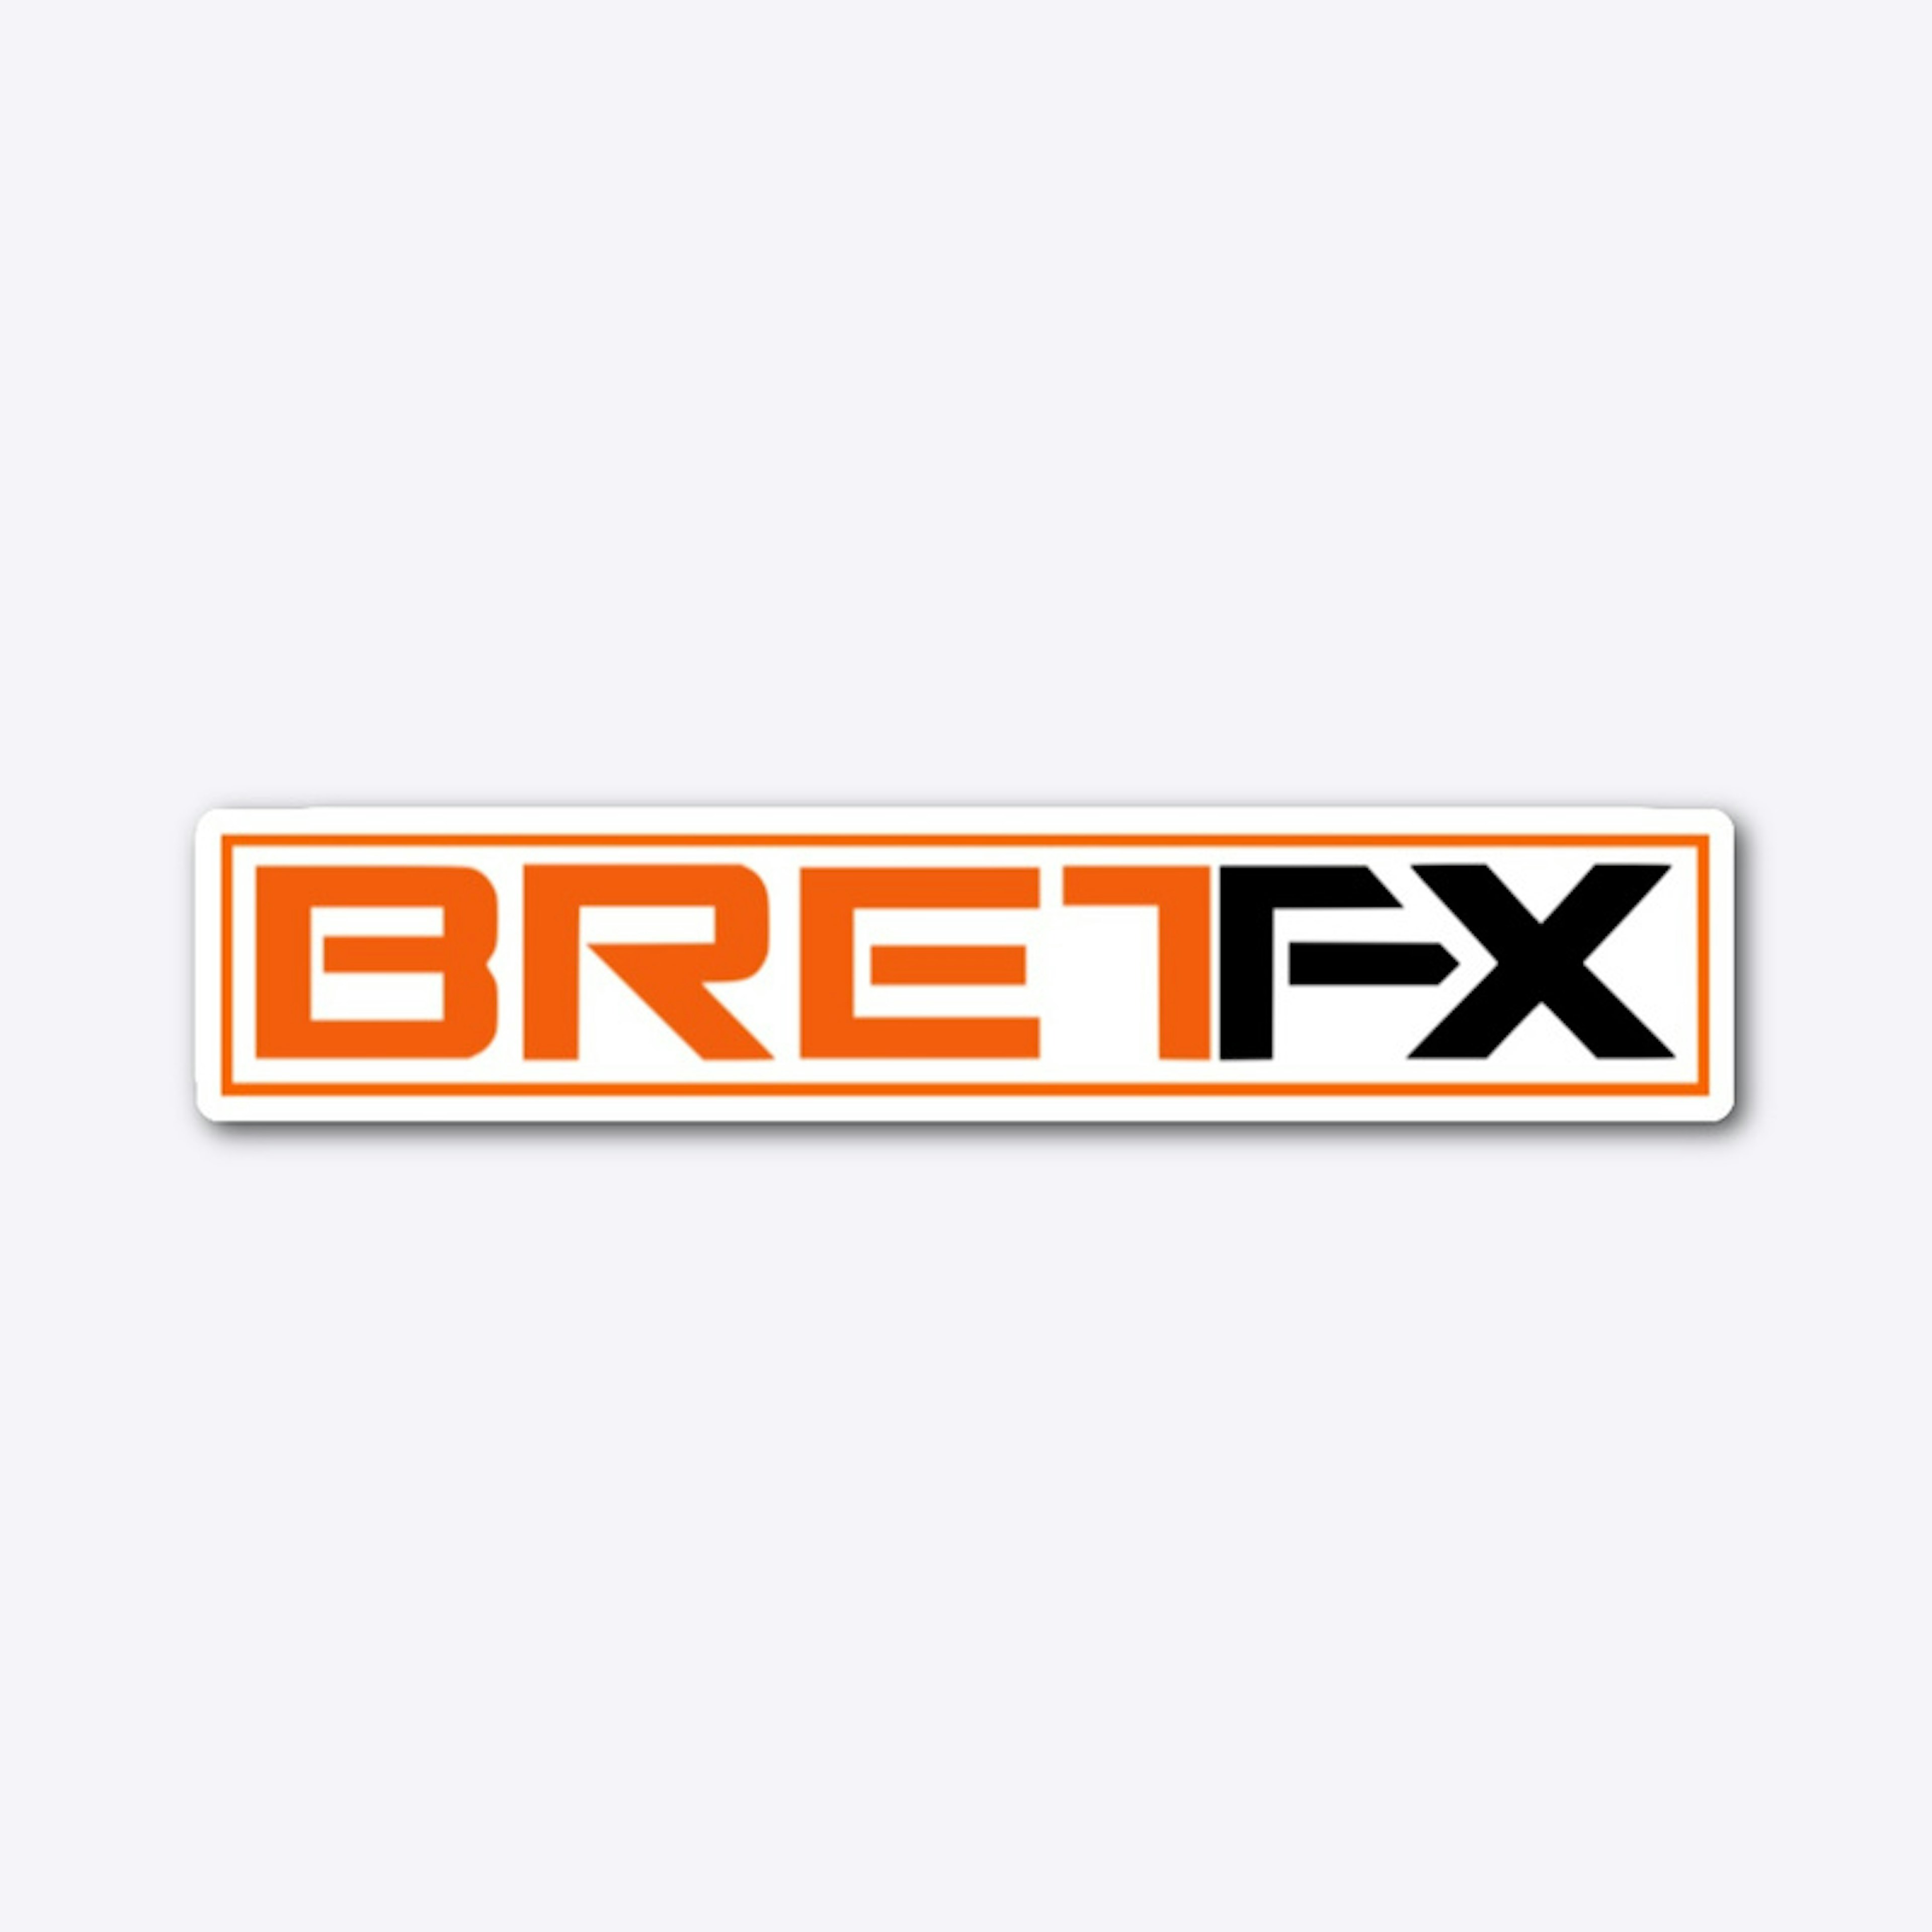 BretFX Logo Sticker